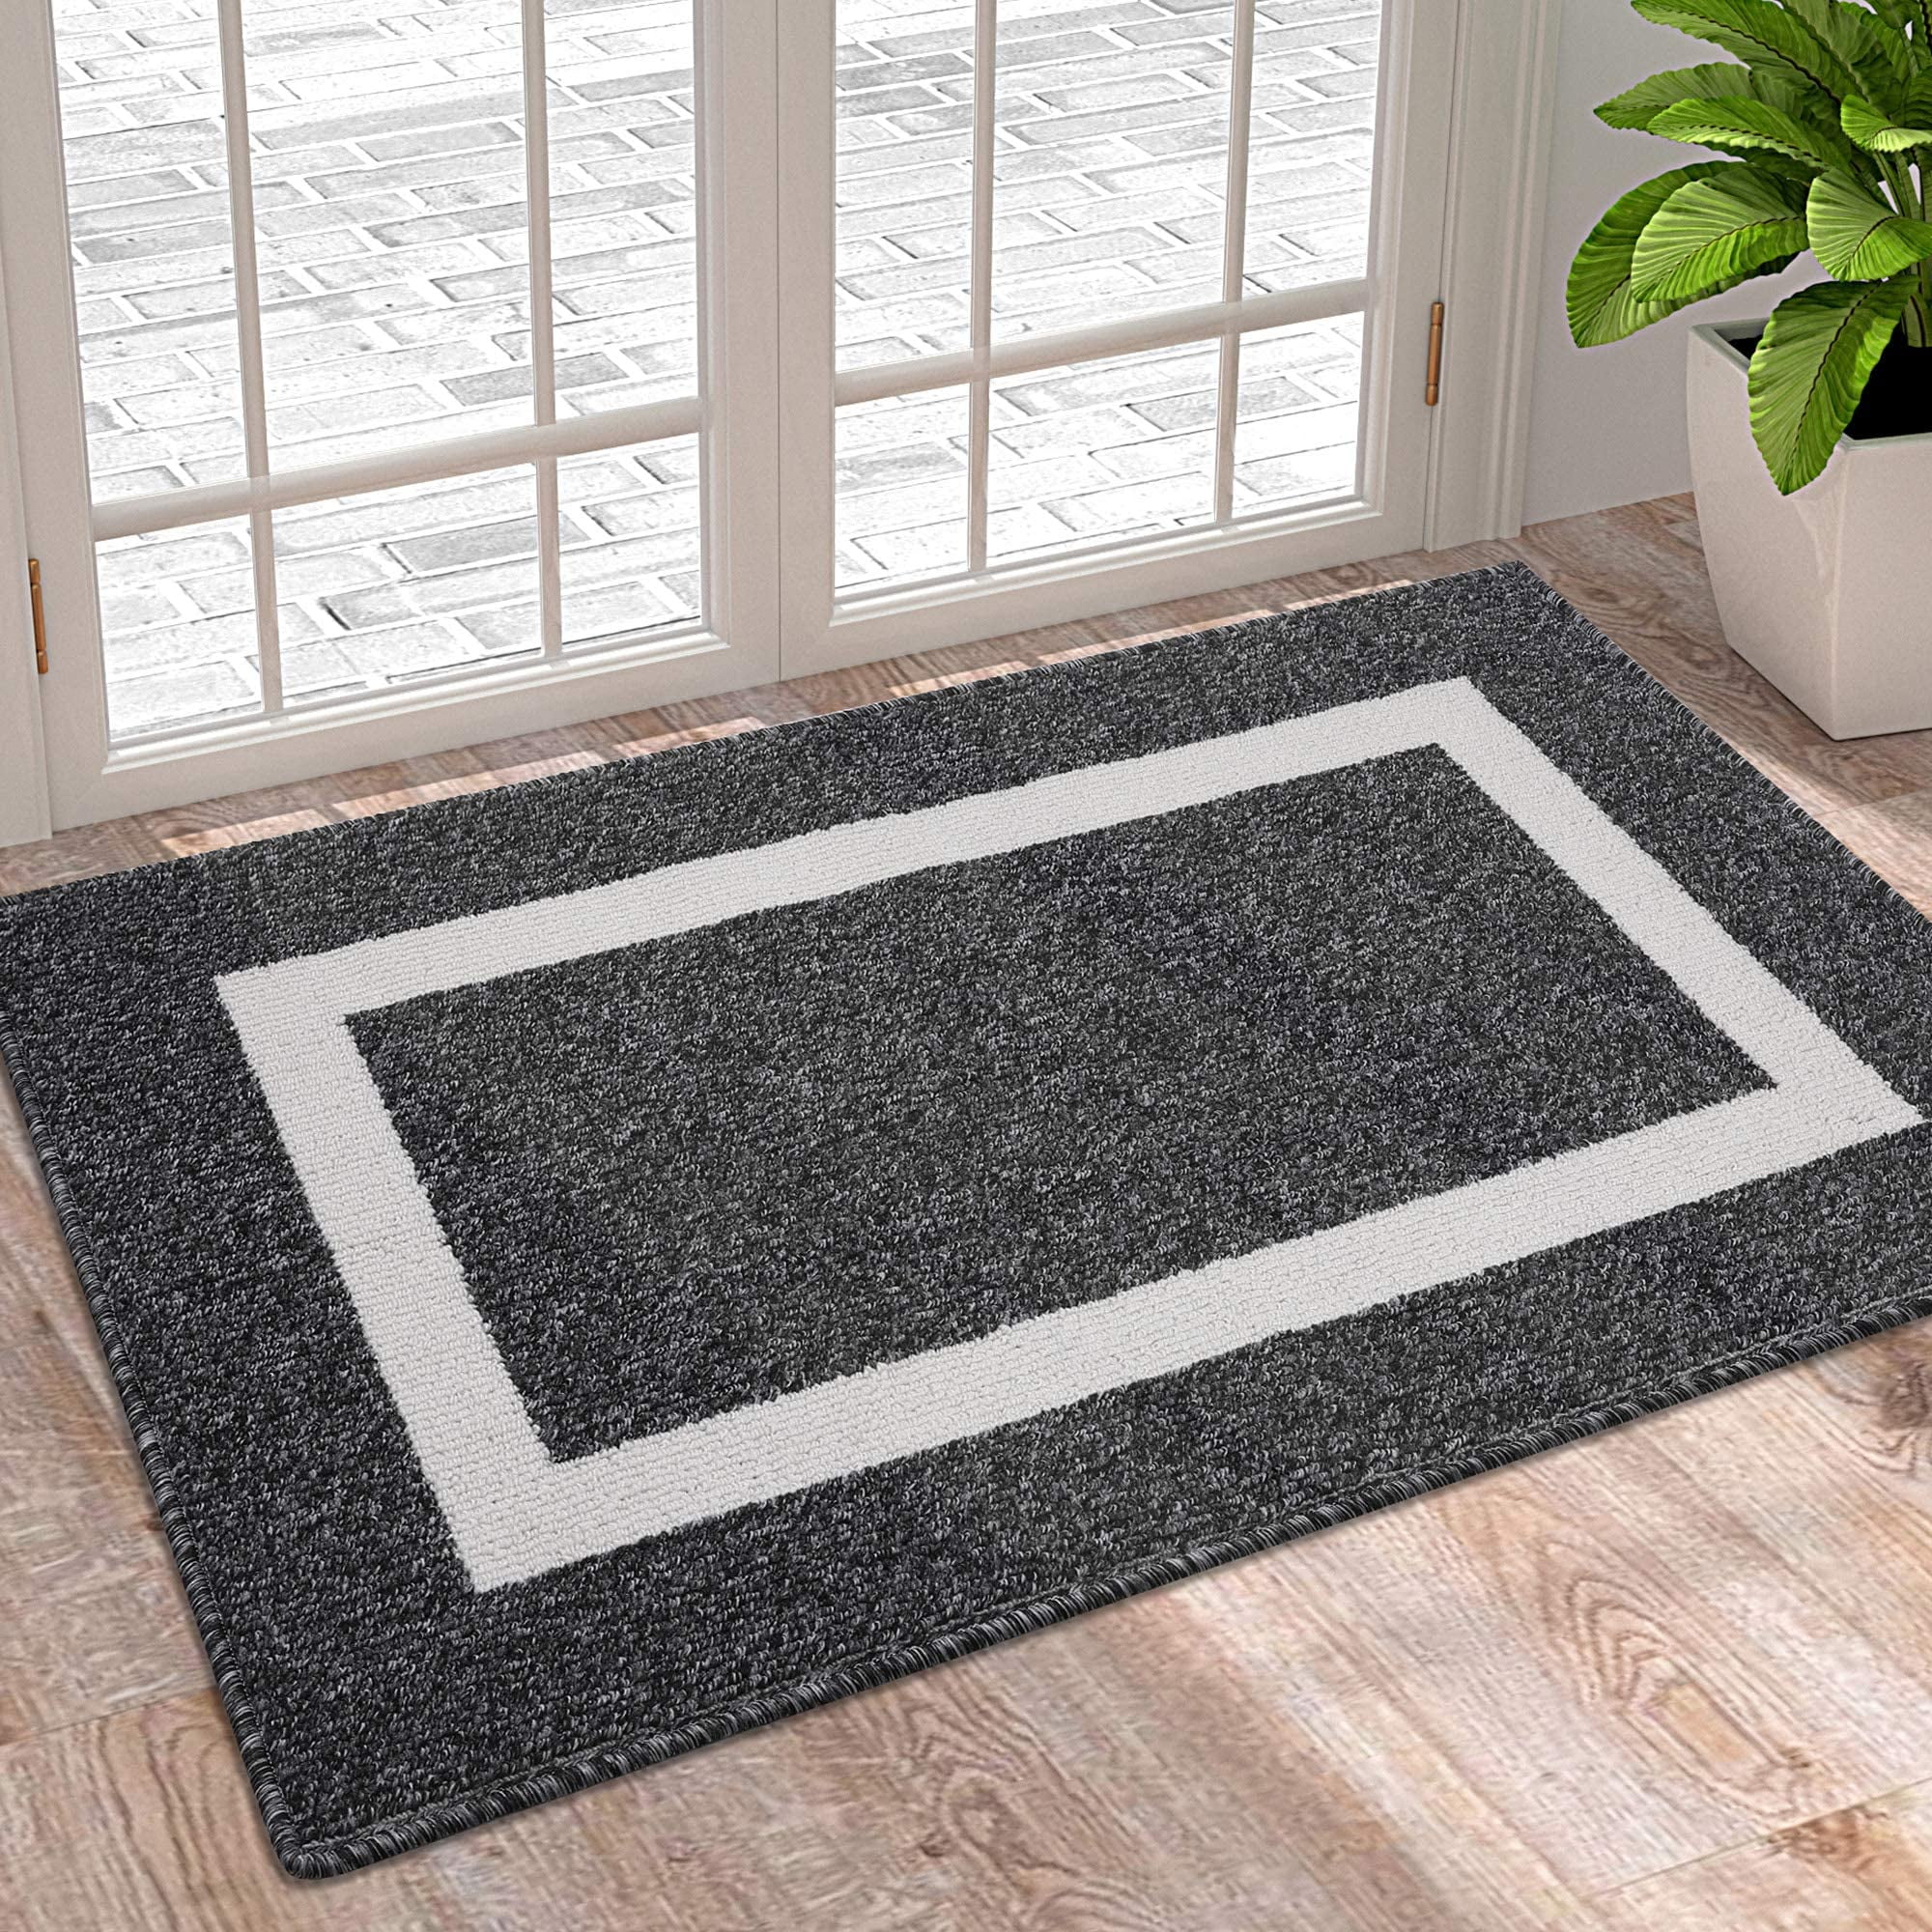 New Grey Indoor Non-Slip Door Mats Heavy Duty Front Back Doormat Small Floor Mat 